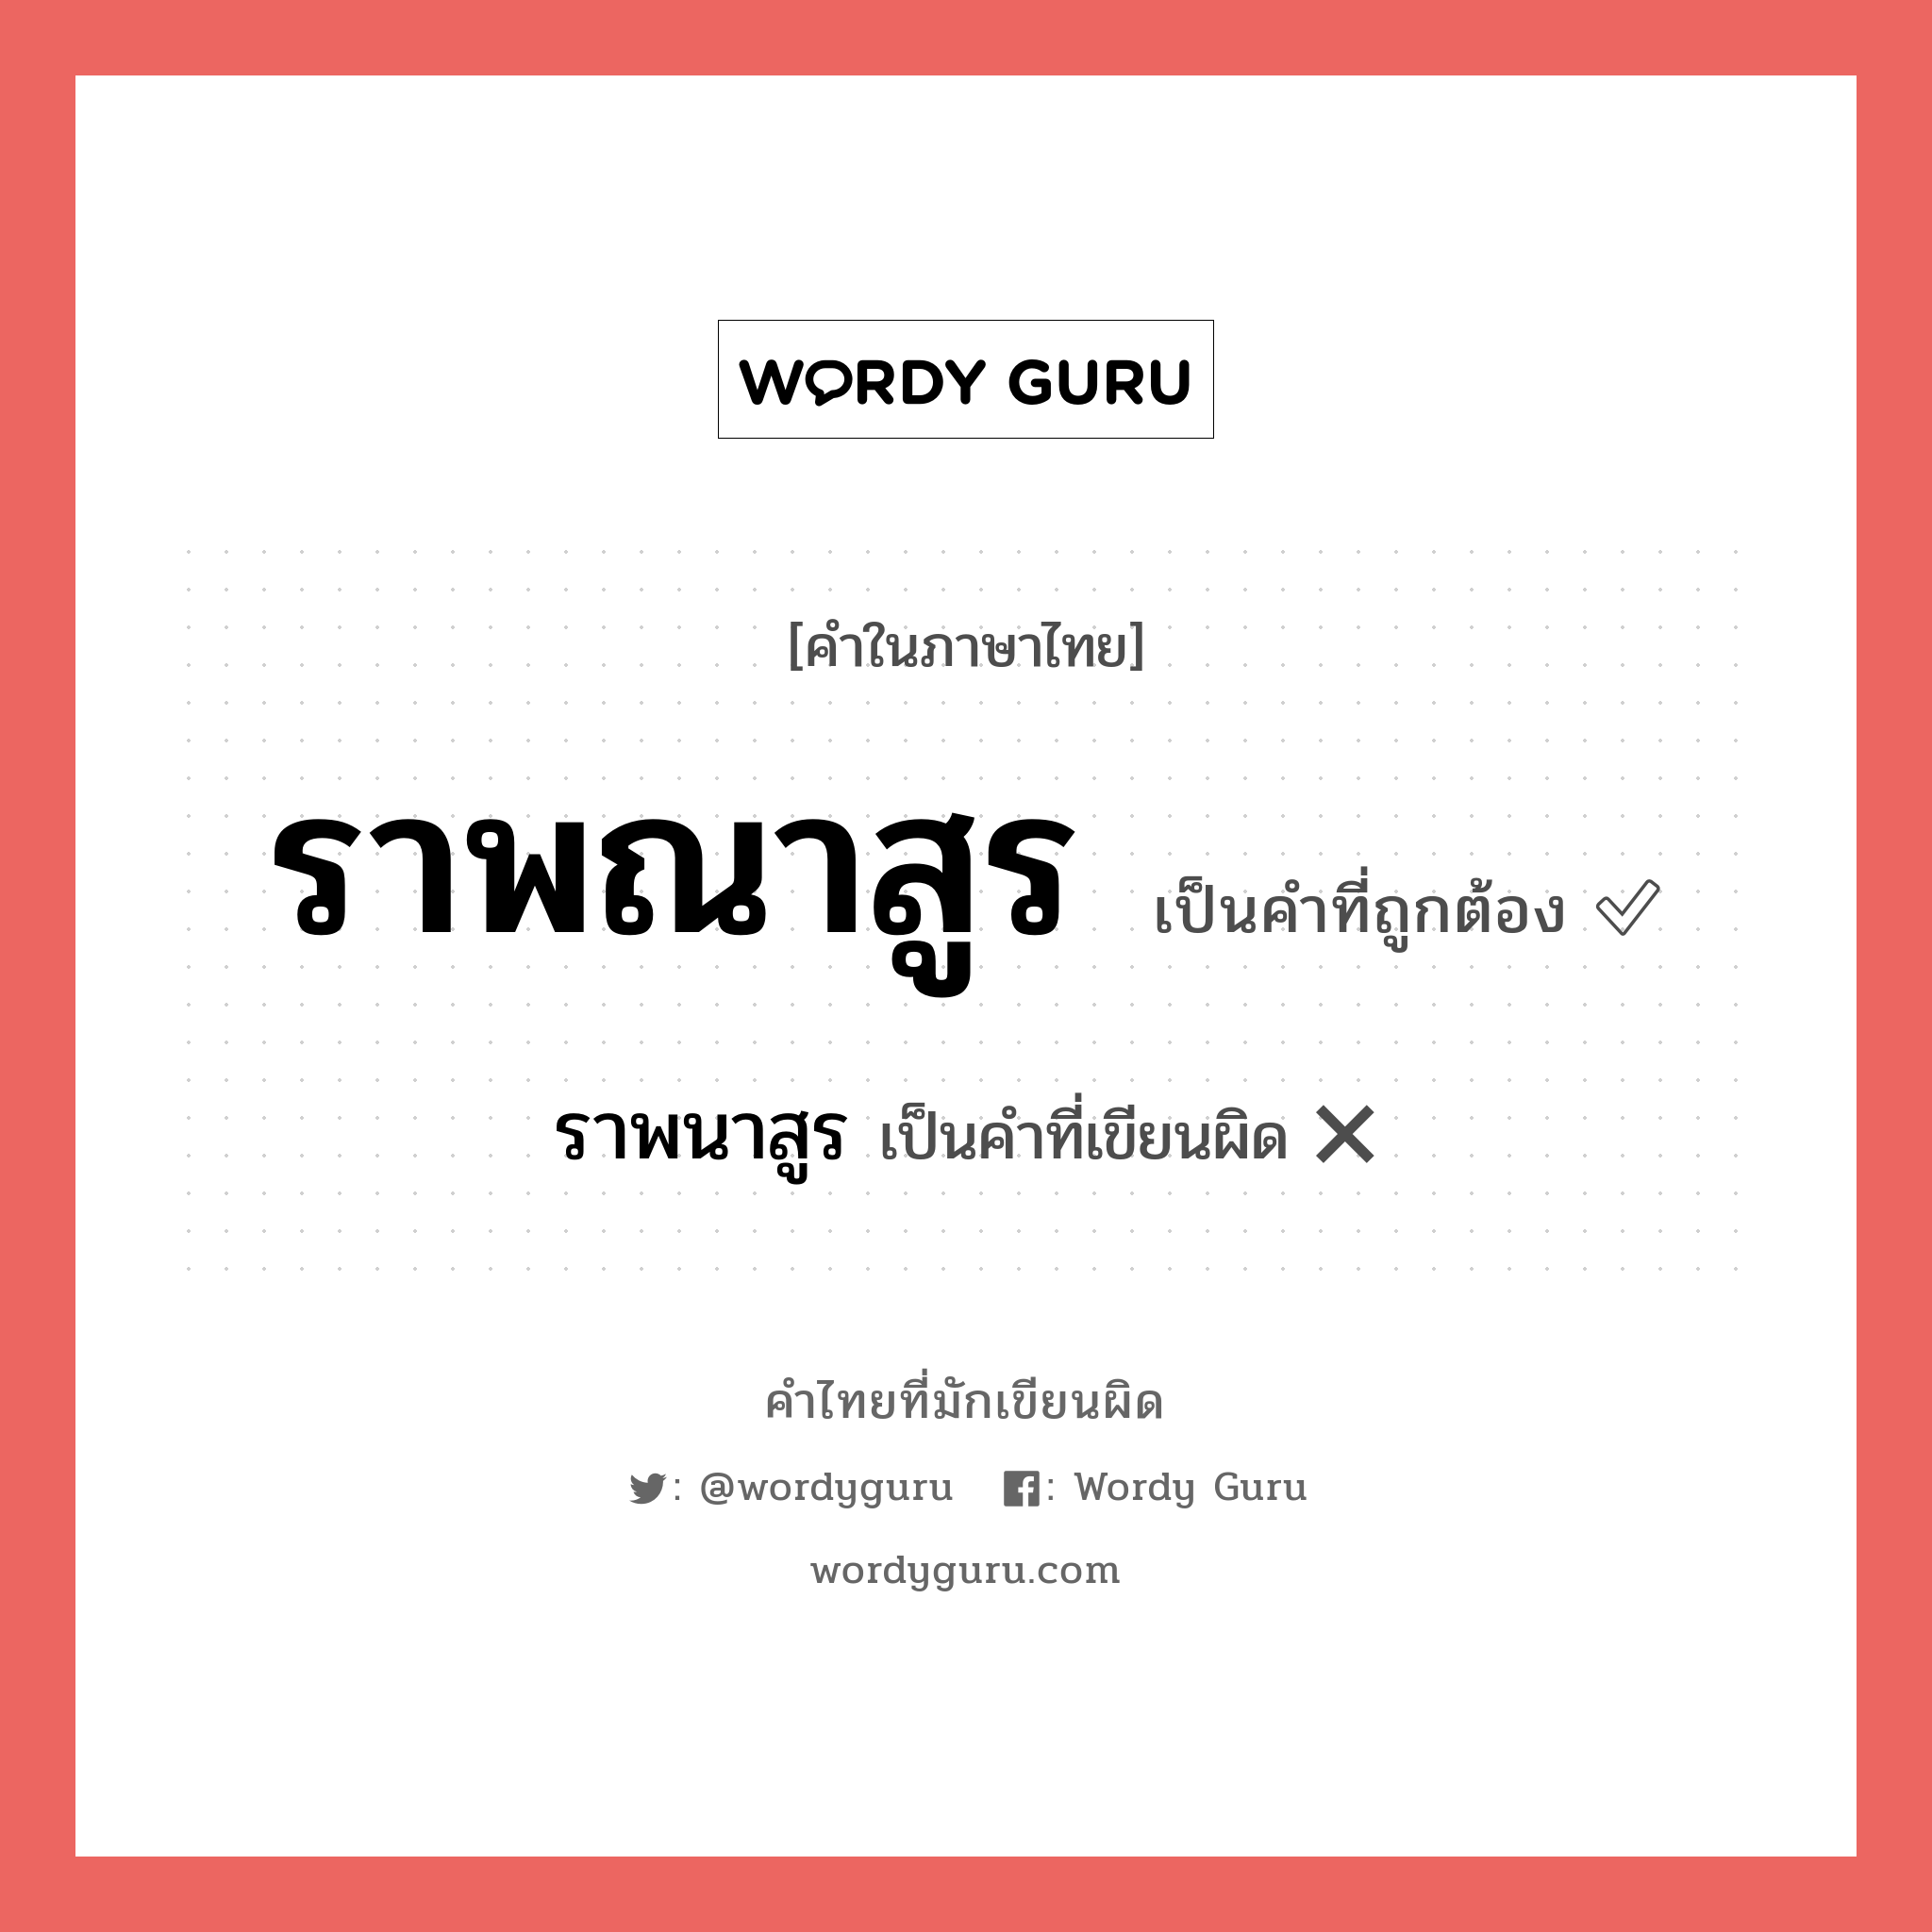 ราพณาสูร หรือ ราพนาสูร คำไหนเขียนถูก?, คำในภาษาไทยที่มักเขียนผิด ราพณาสูร คำที่ผิด ❌ ราพนาสูร